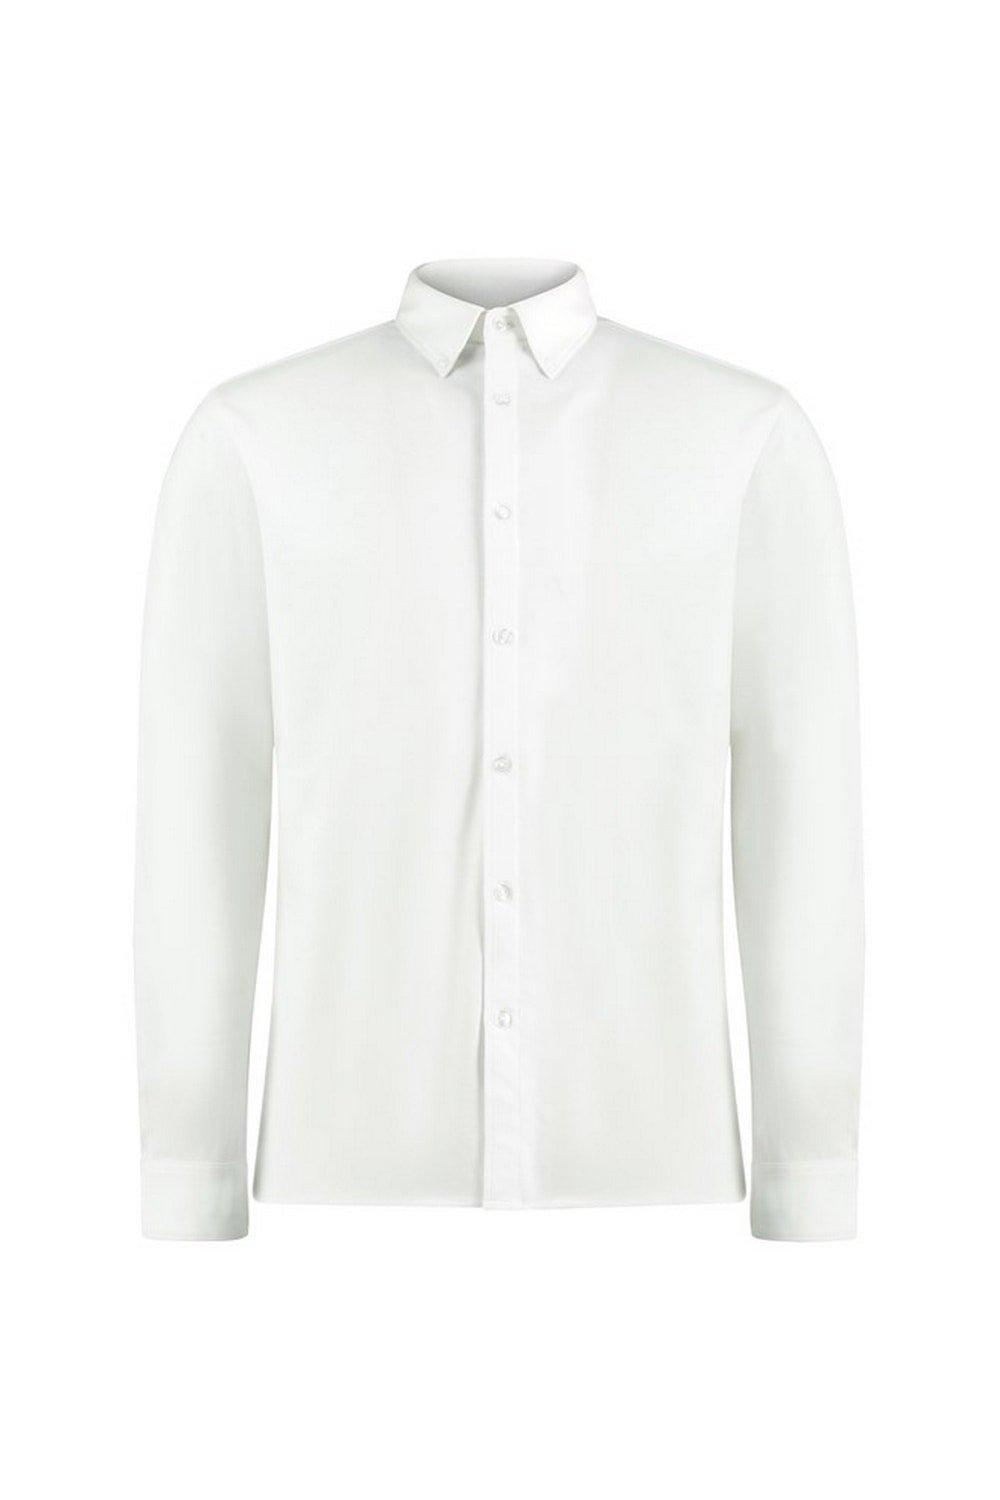 Индивидуальная рубашка с длинными рукавами Superwash 60°C Kustom Kit, белый комплект из 2 футболок с длинными рукавами отложной воротник 2 года 86 см синий